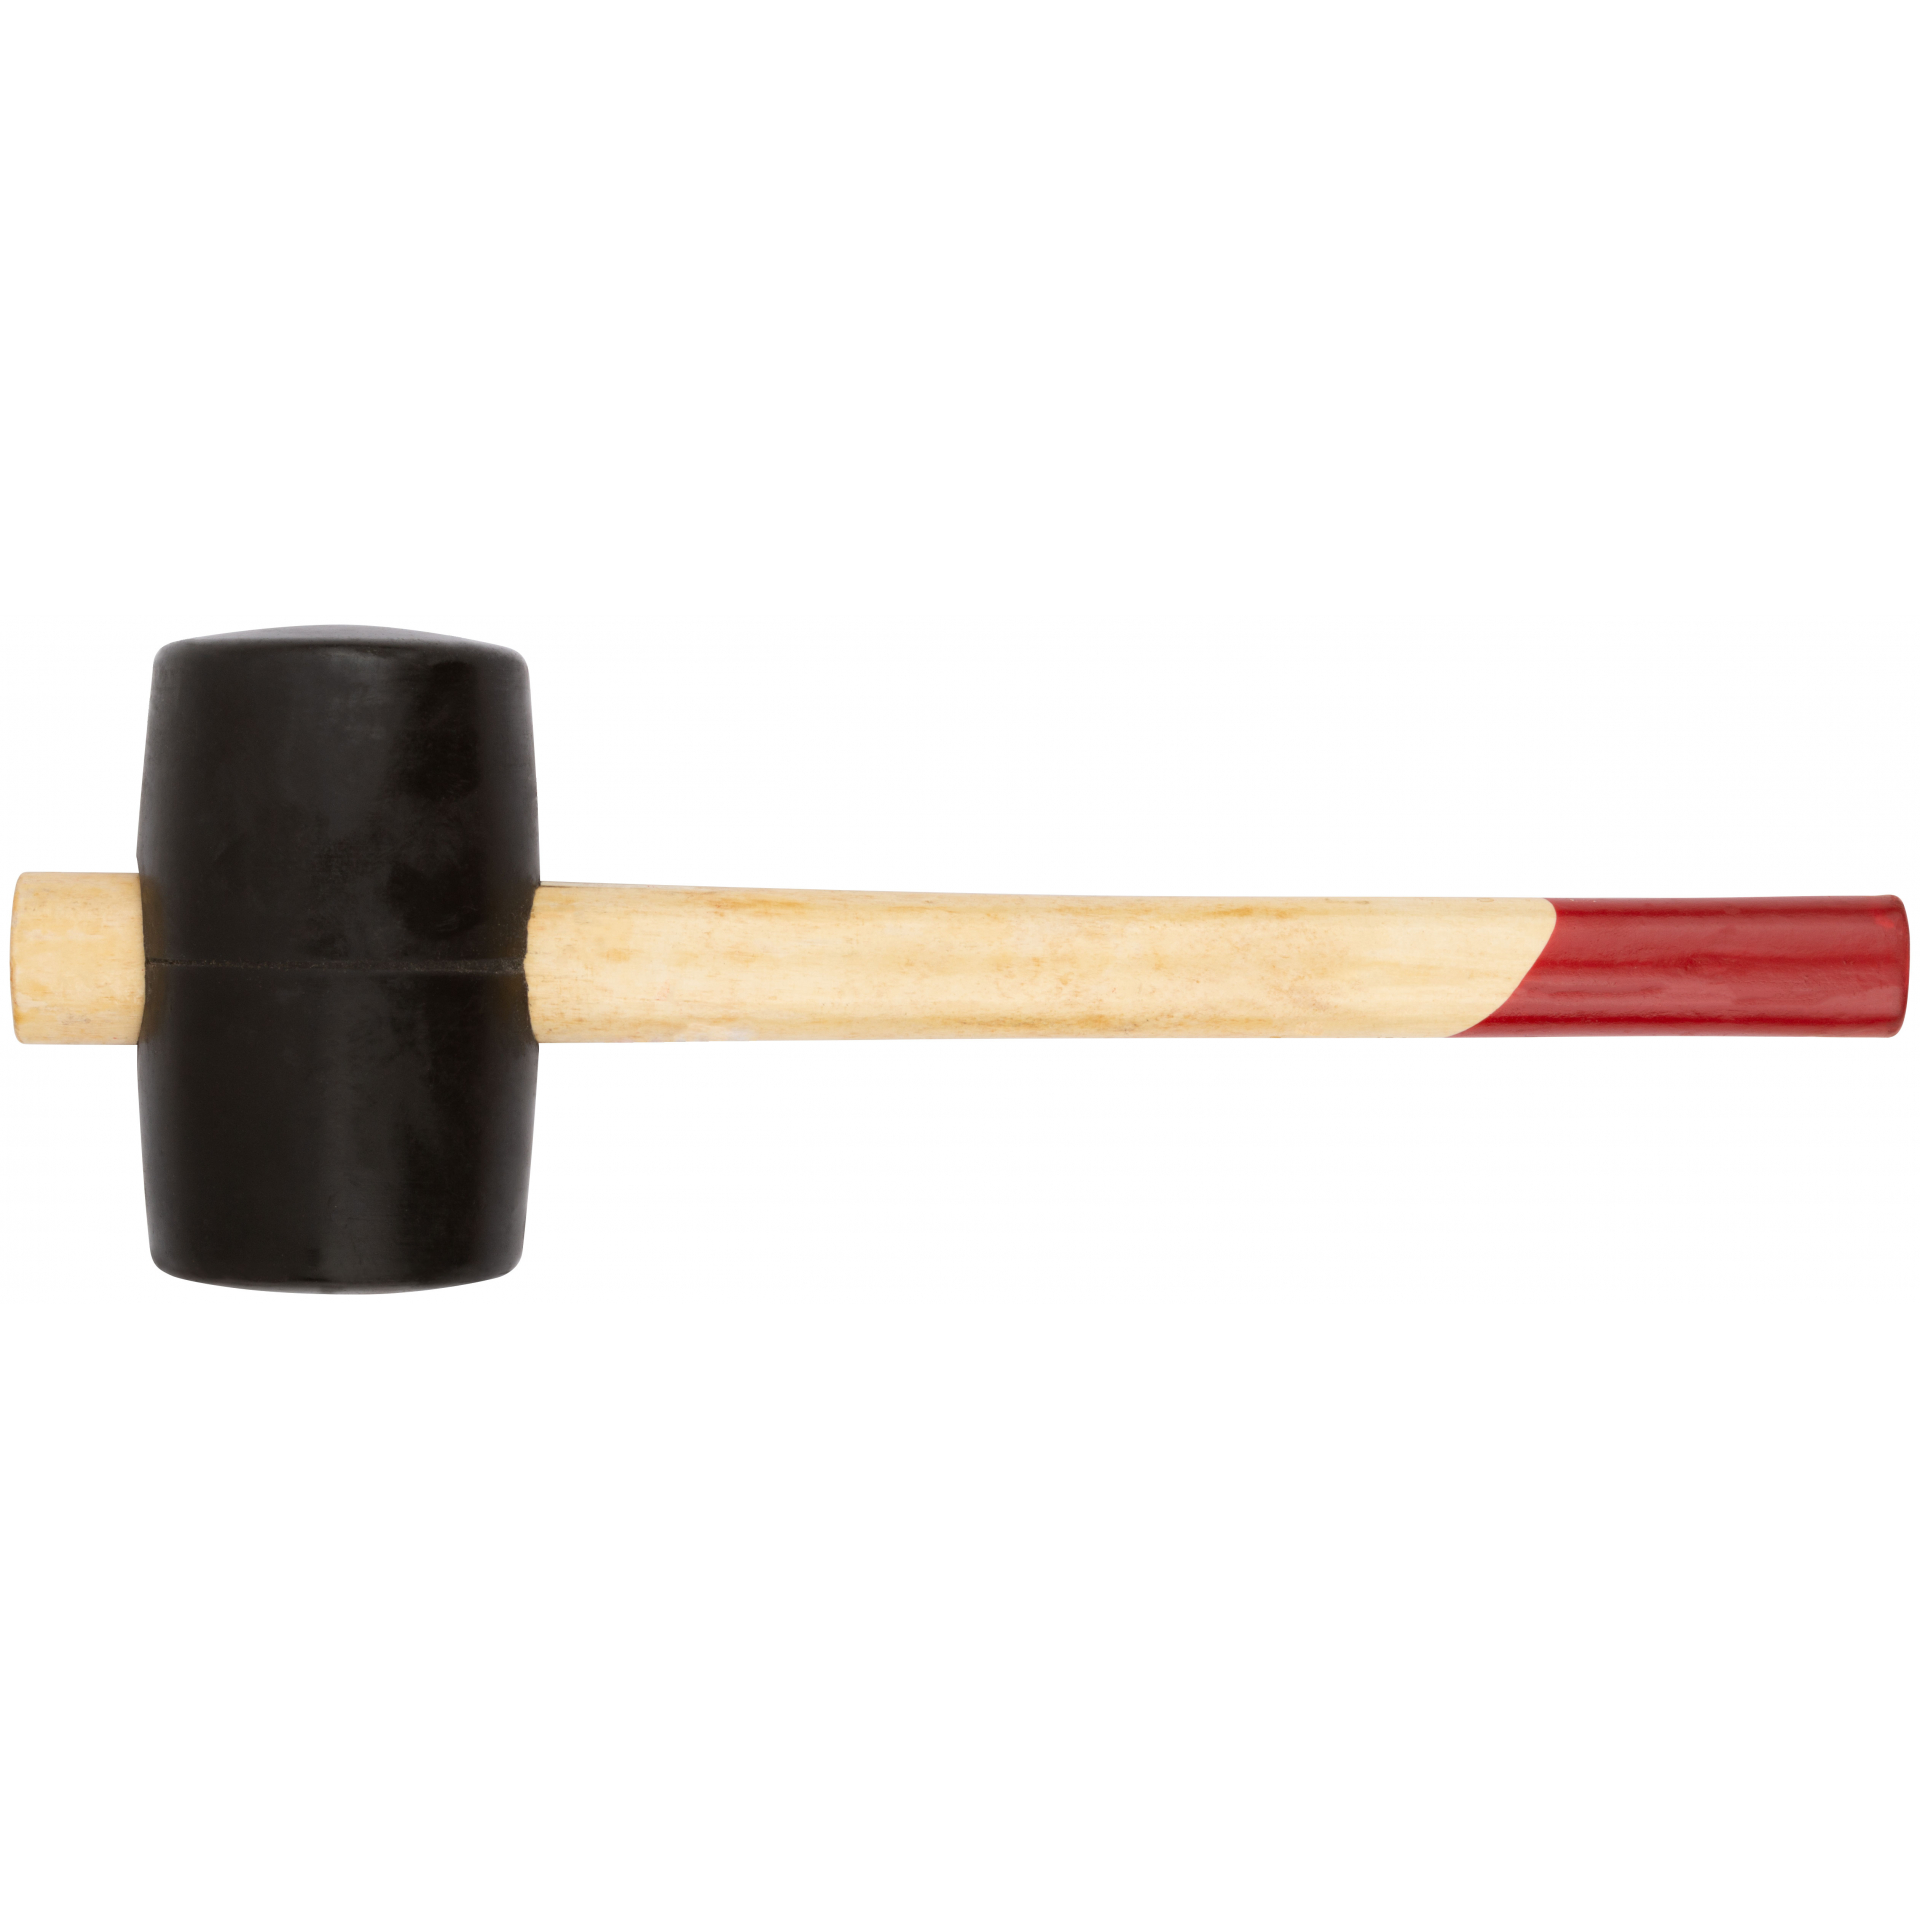 Киянка резиновая, деревянная ручка 55 мм ( 400 гр )